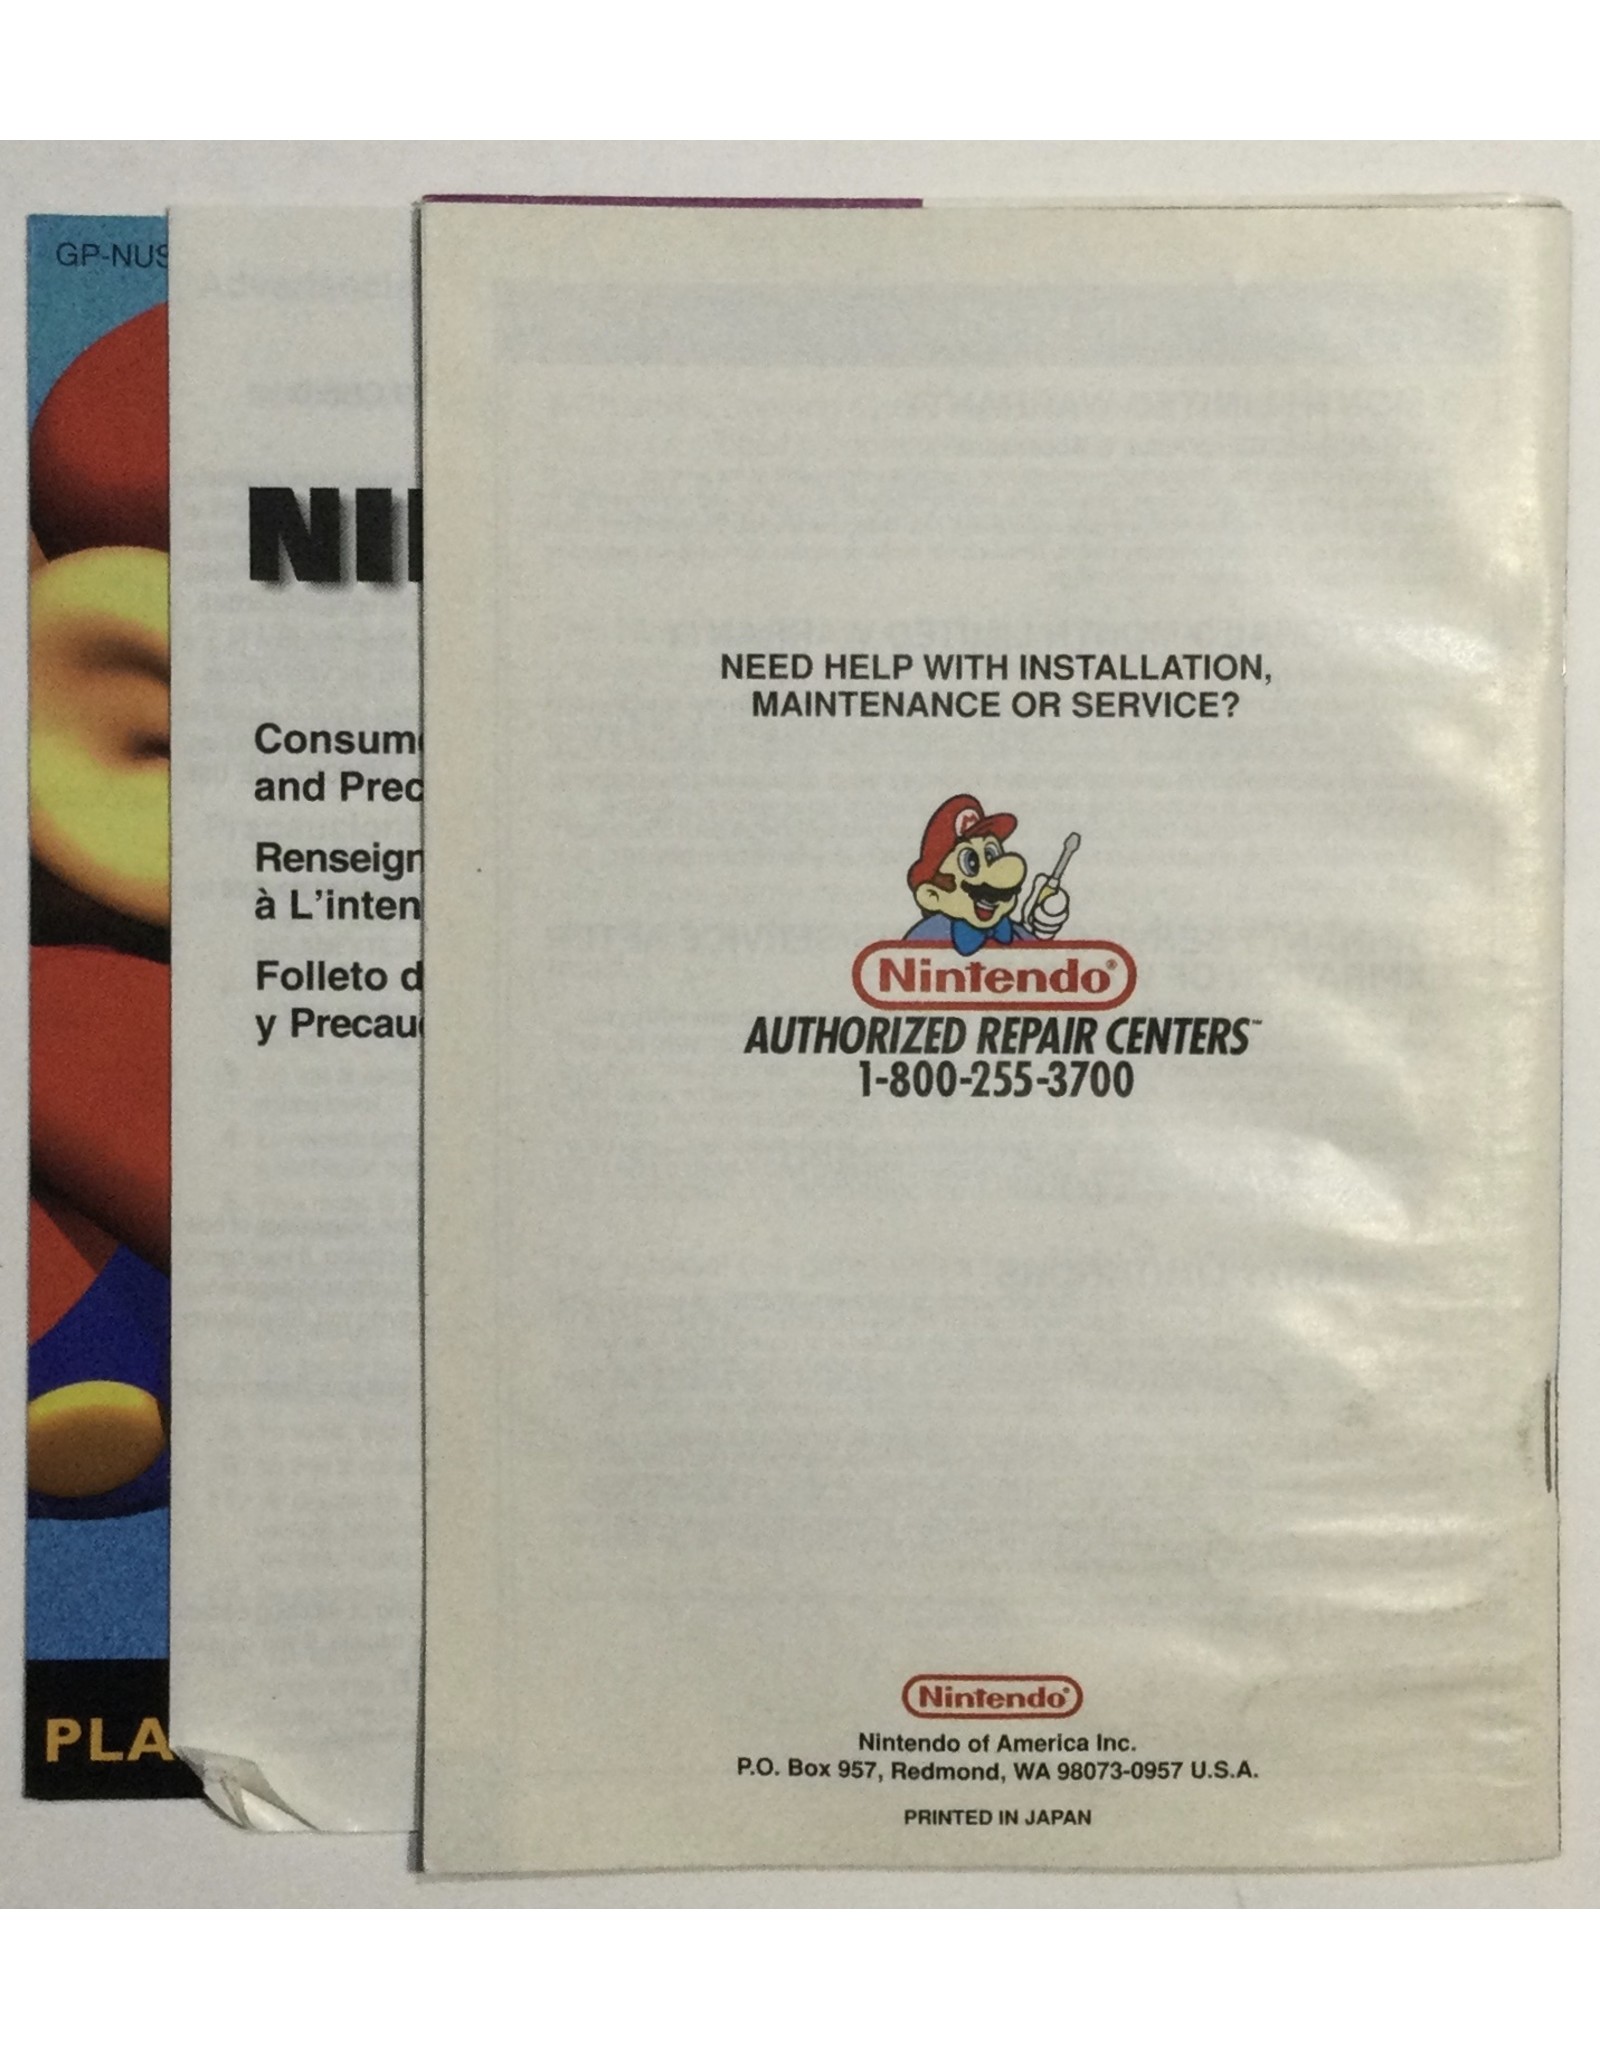 Nintendo Pilot Wings 64 for Nintendo 64 (N64) - CIB